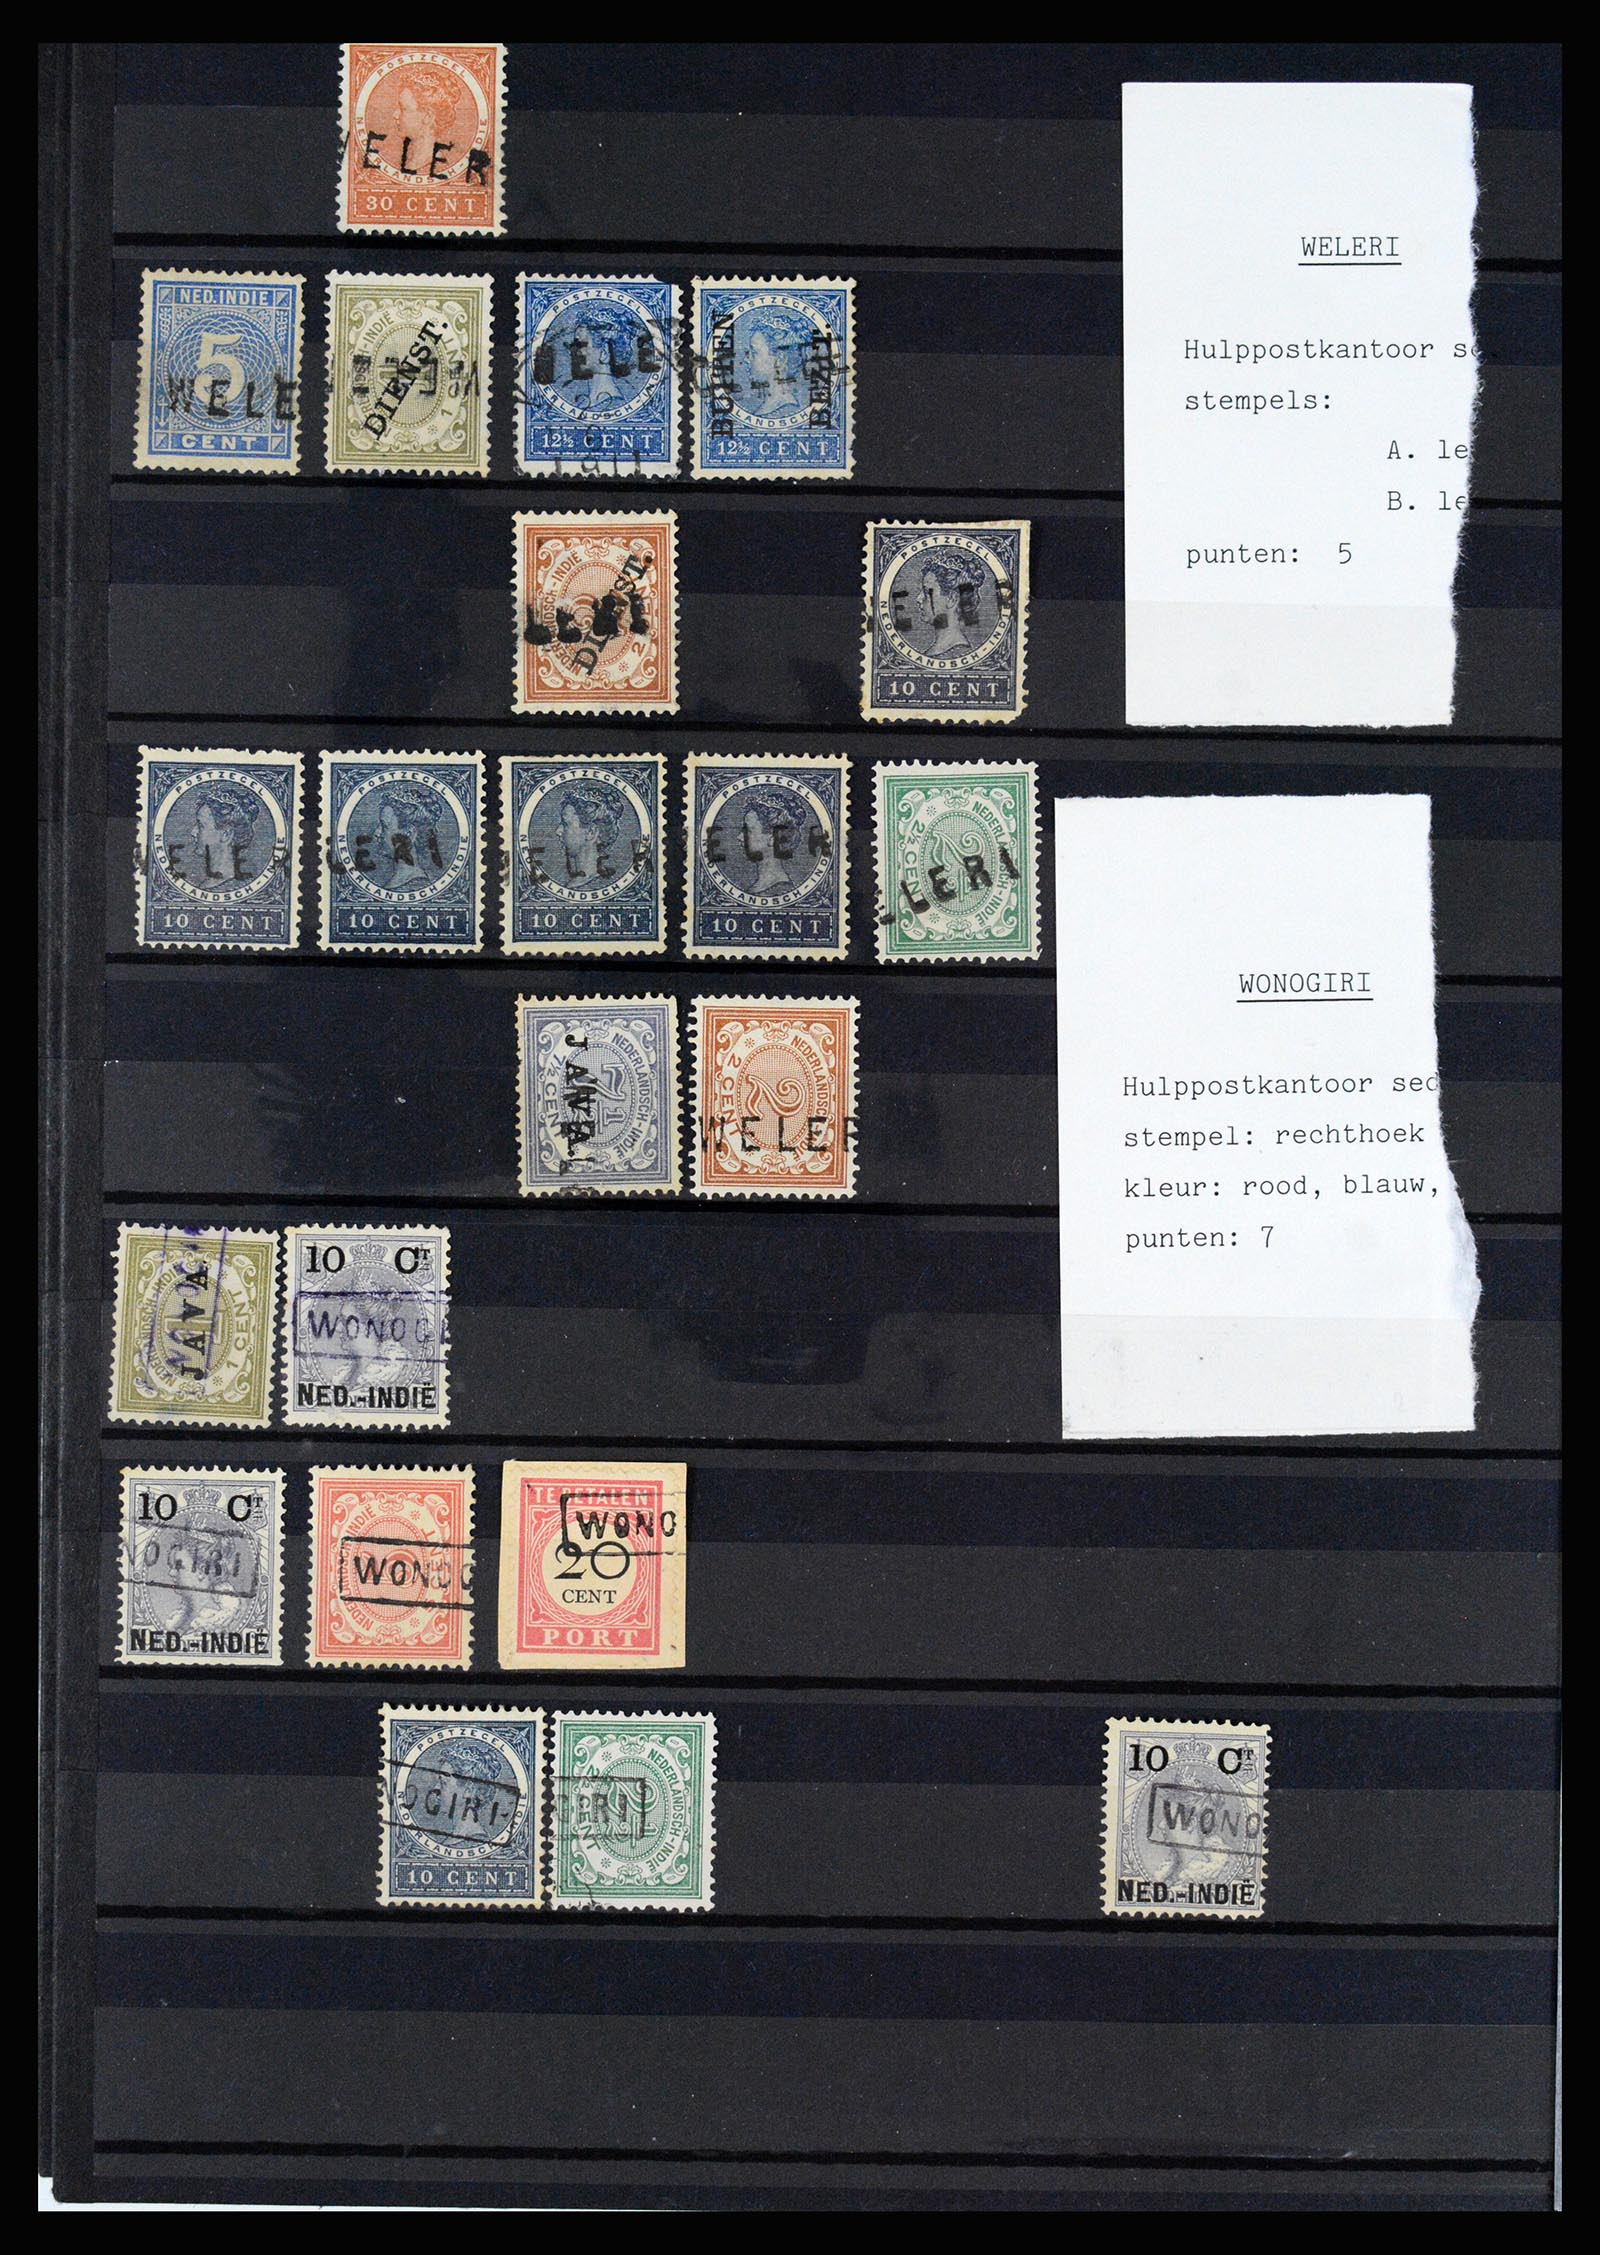 36512 078 - Stamp collection 36512 Nederlands Indië stempels 1872-1930.